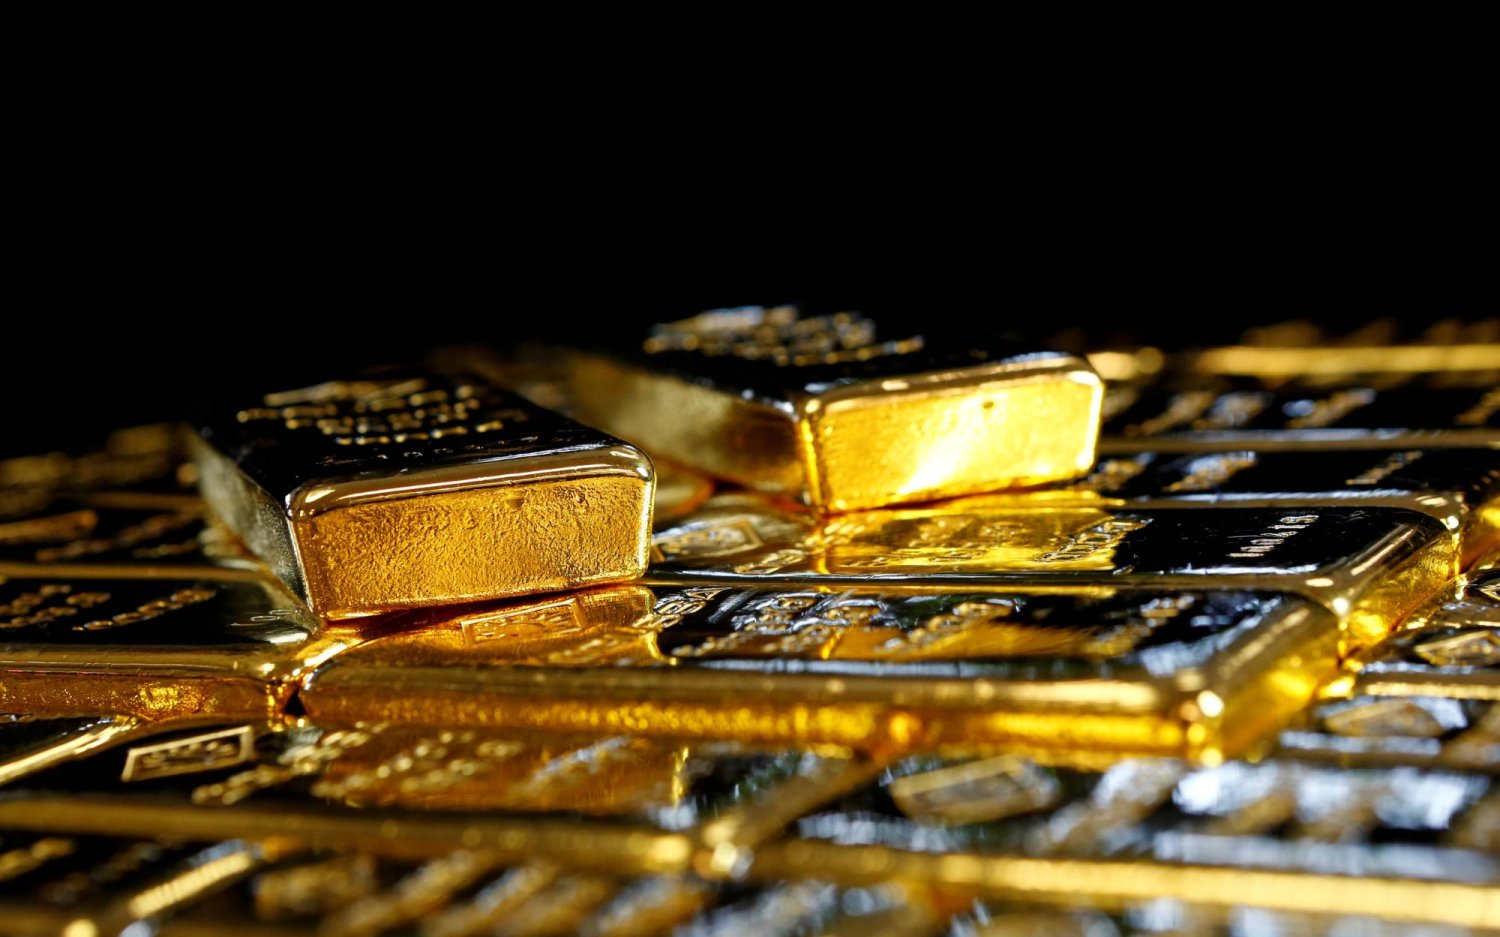 سبائك الذهب في مصنع فصل الذهب والفضة النمساوي «أوغوسا» في فيينا (رويترز)